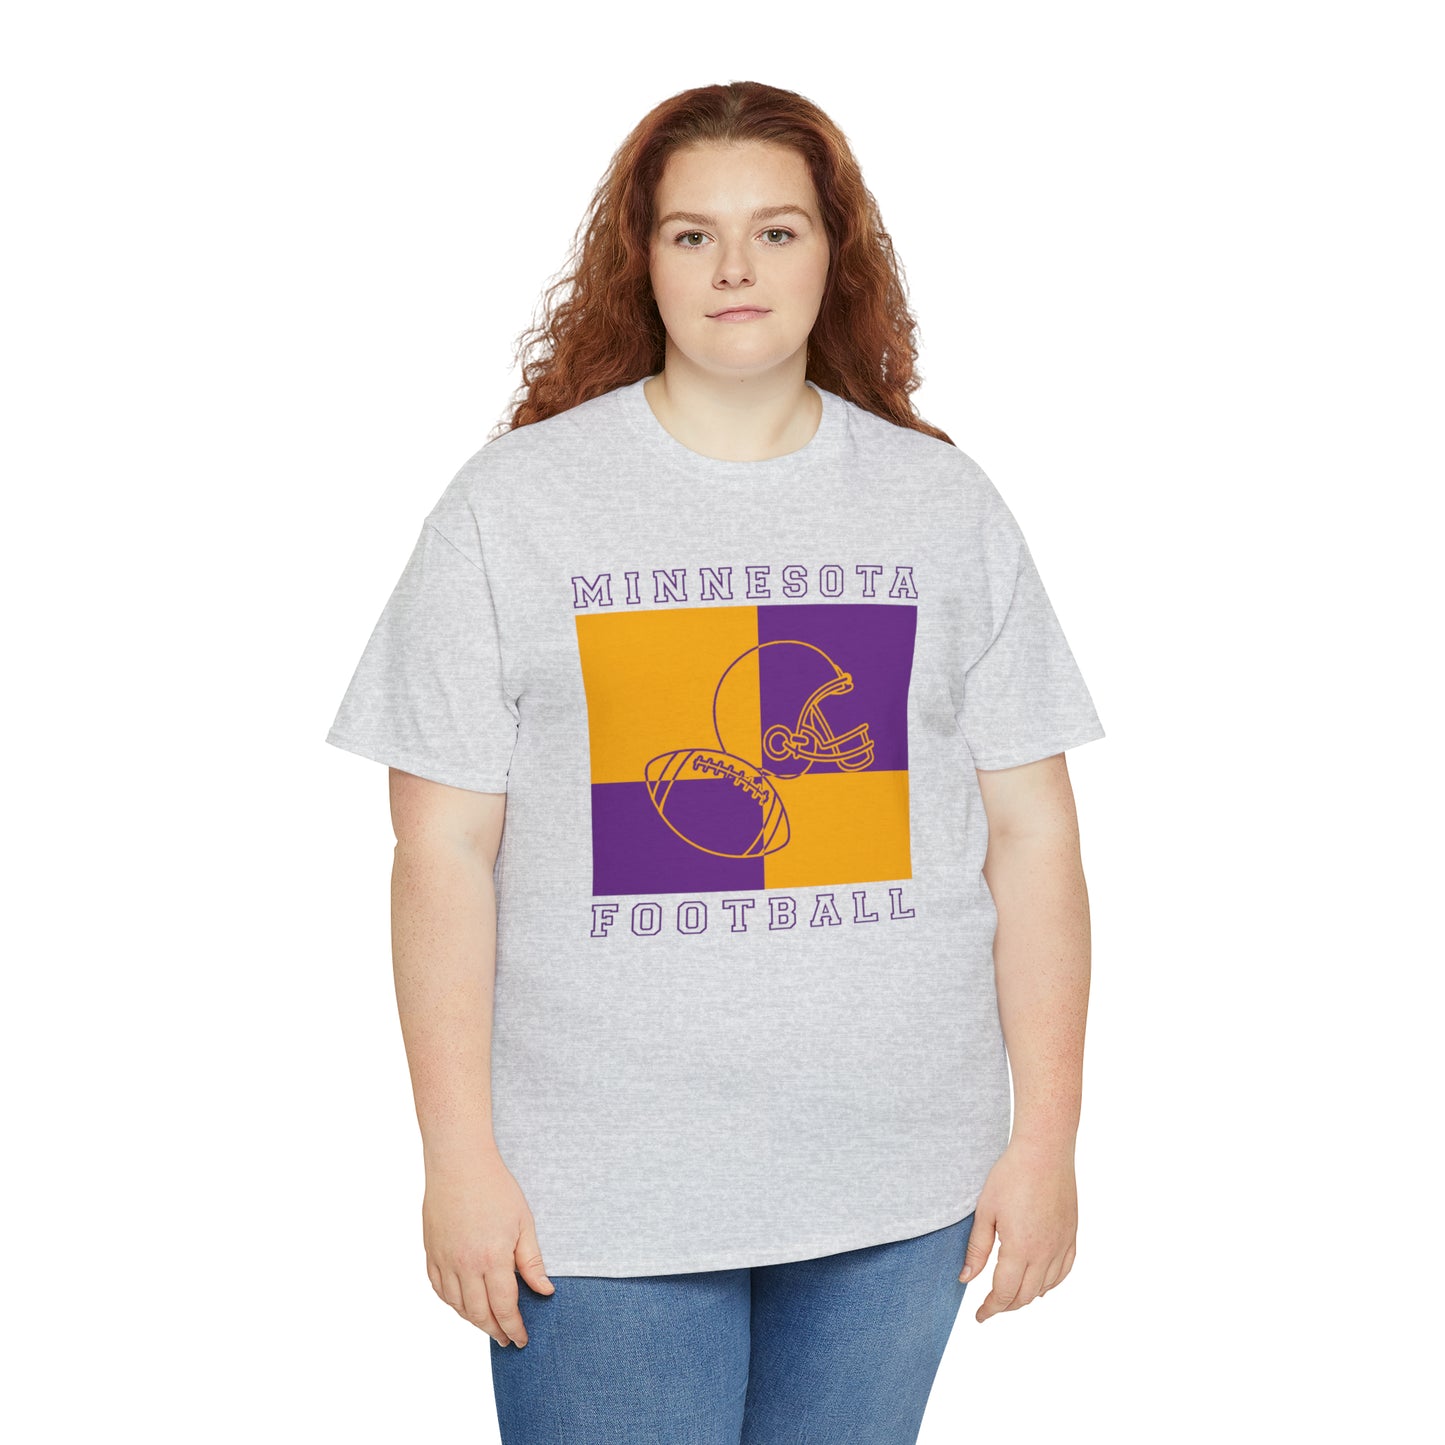 Minnesota Vikings Football Tshirt